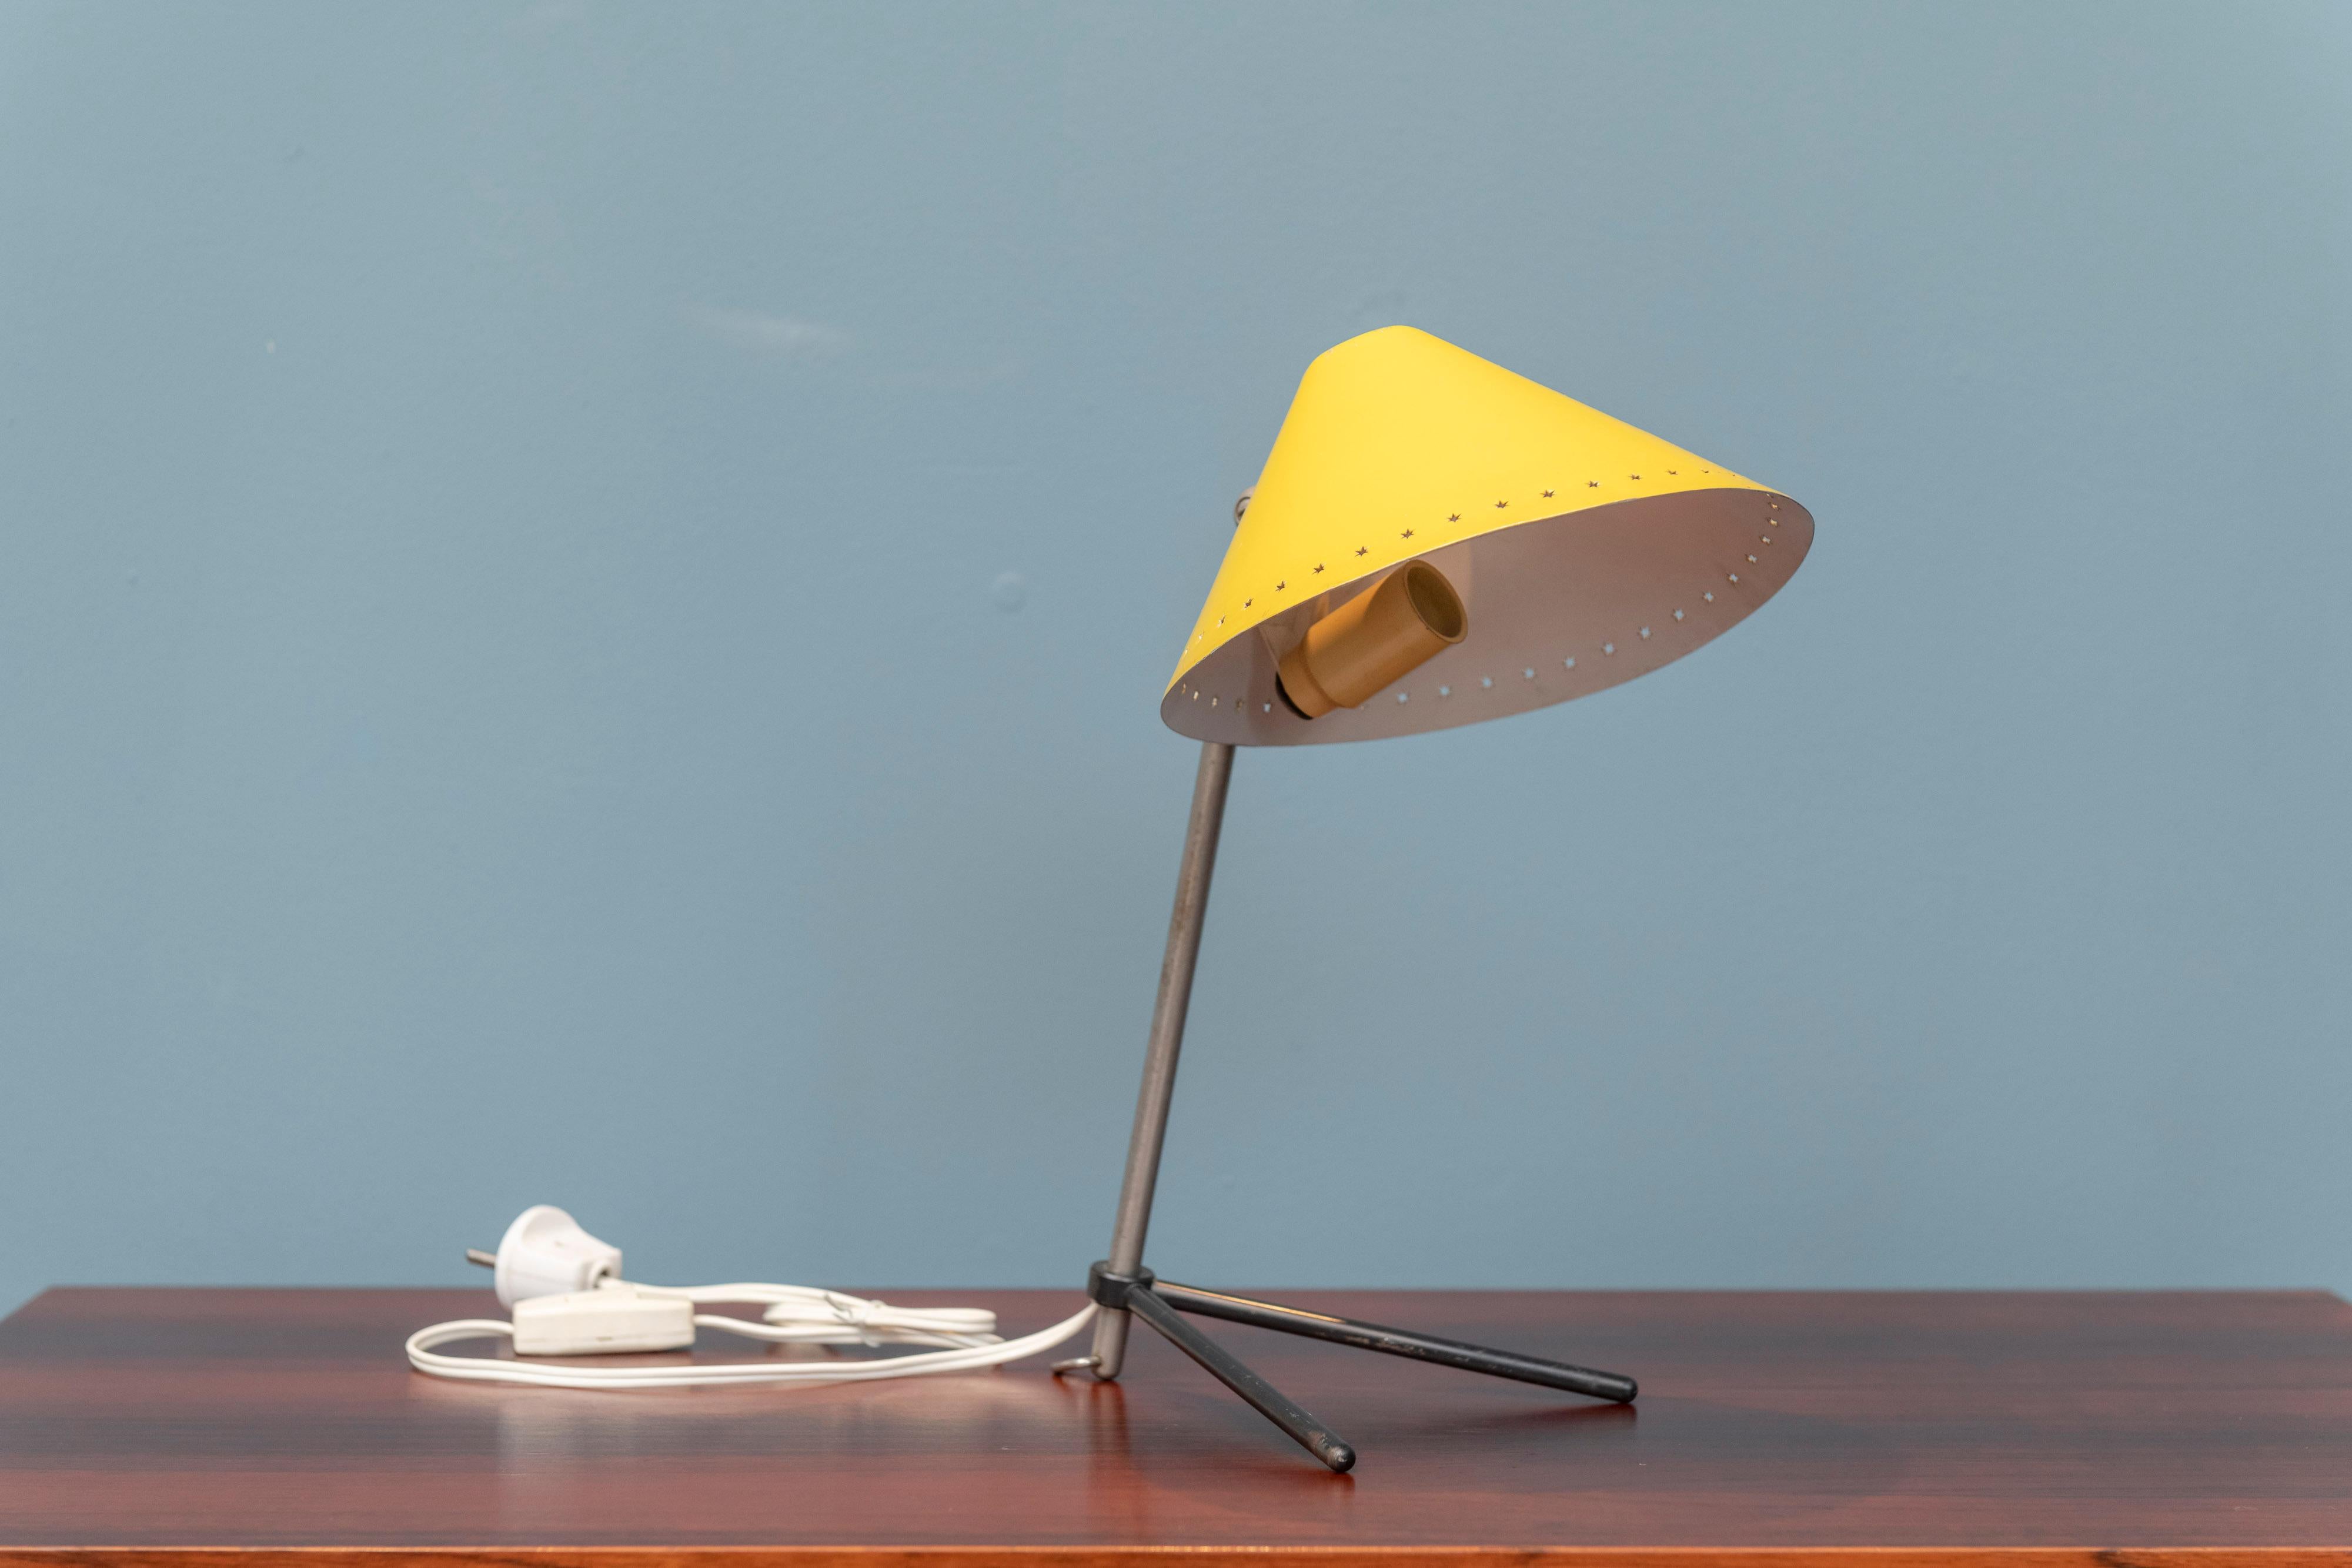 Scandinavian Modern Pinocchio Lamp by H. Busquet for Hala Zeist, Netherlands